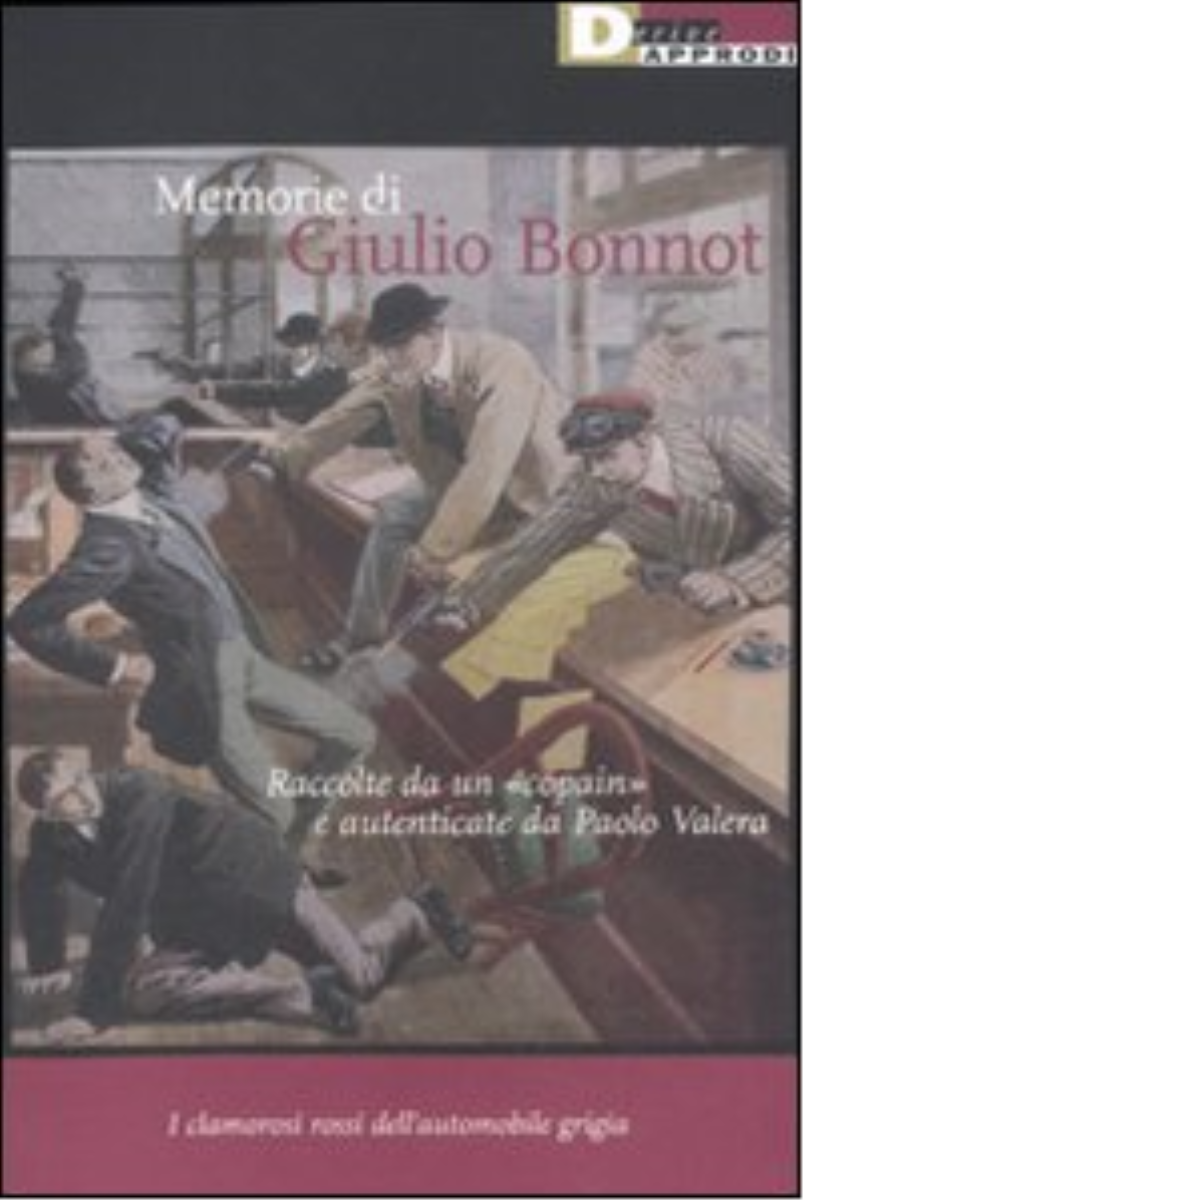 MEMORIE DI GIULIO BONNOT - AAVV. - DeriveApprodi editore, 2011